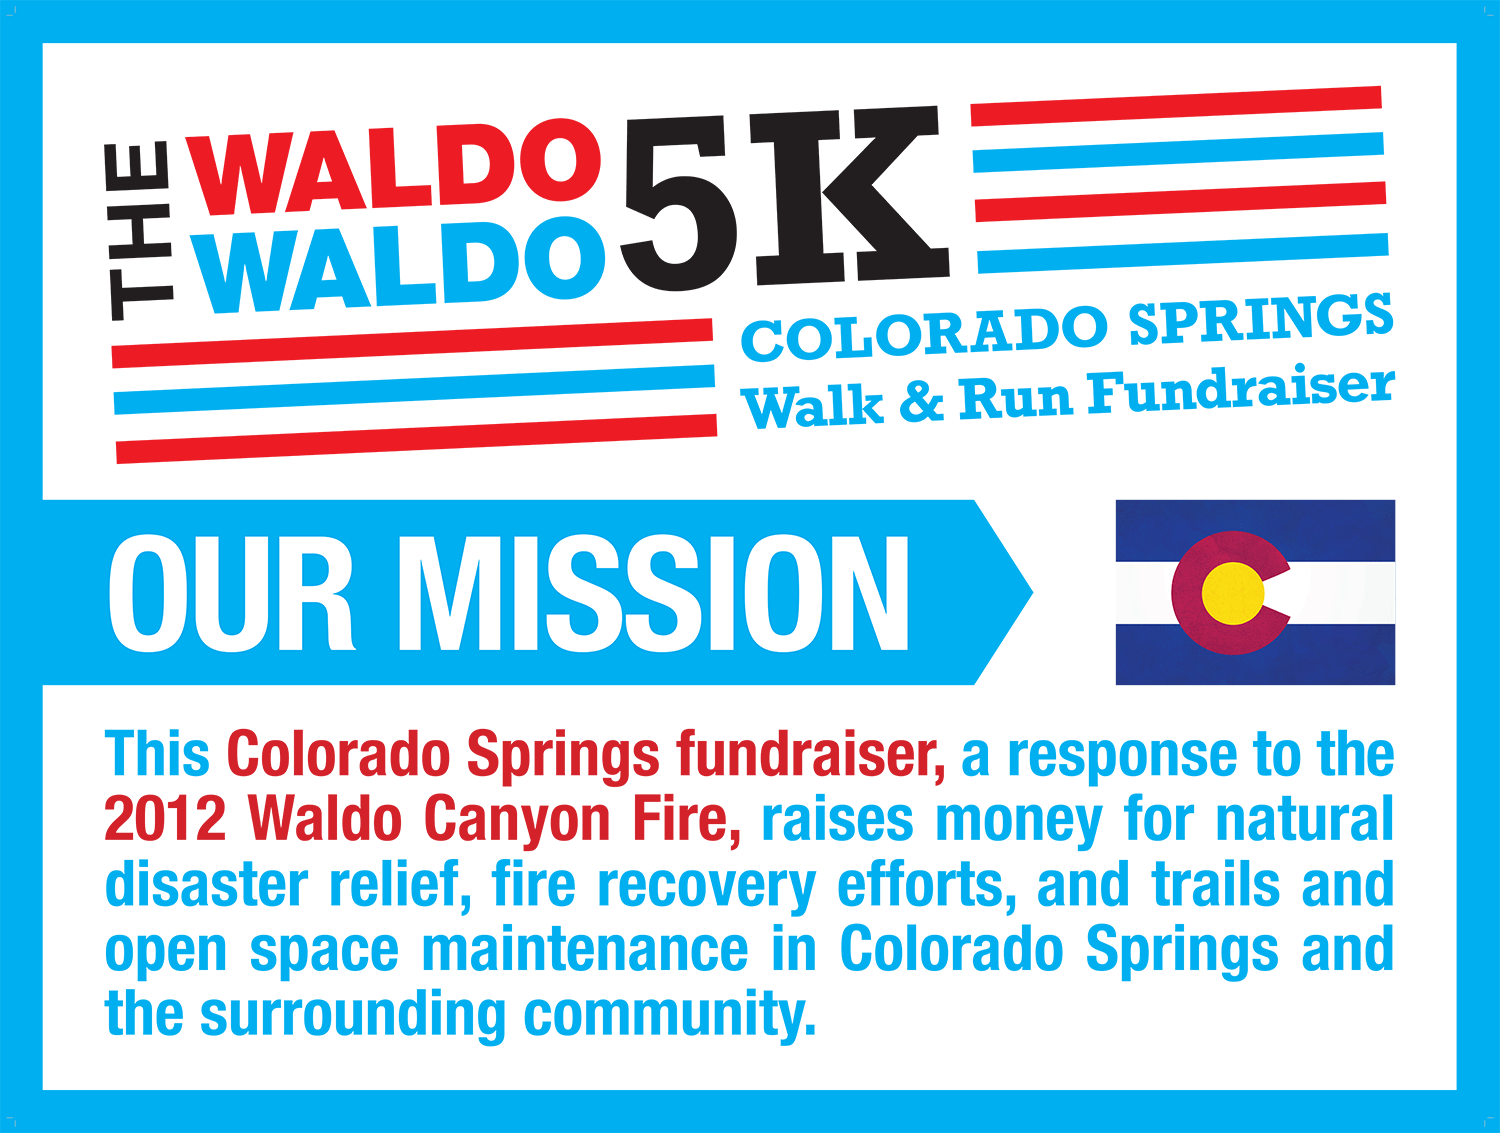 Waldo Waldo 5K Mission